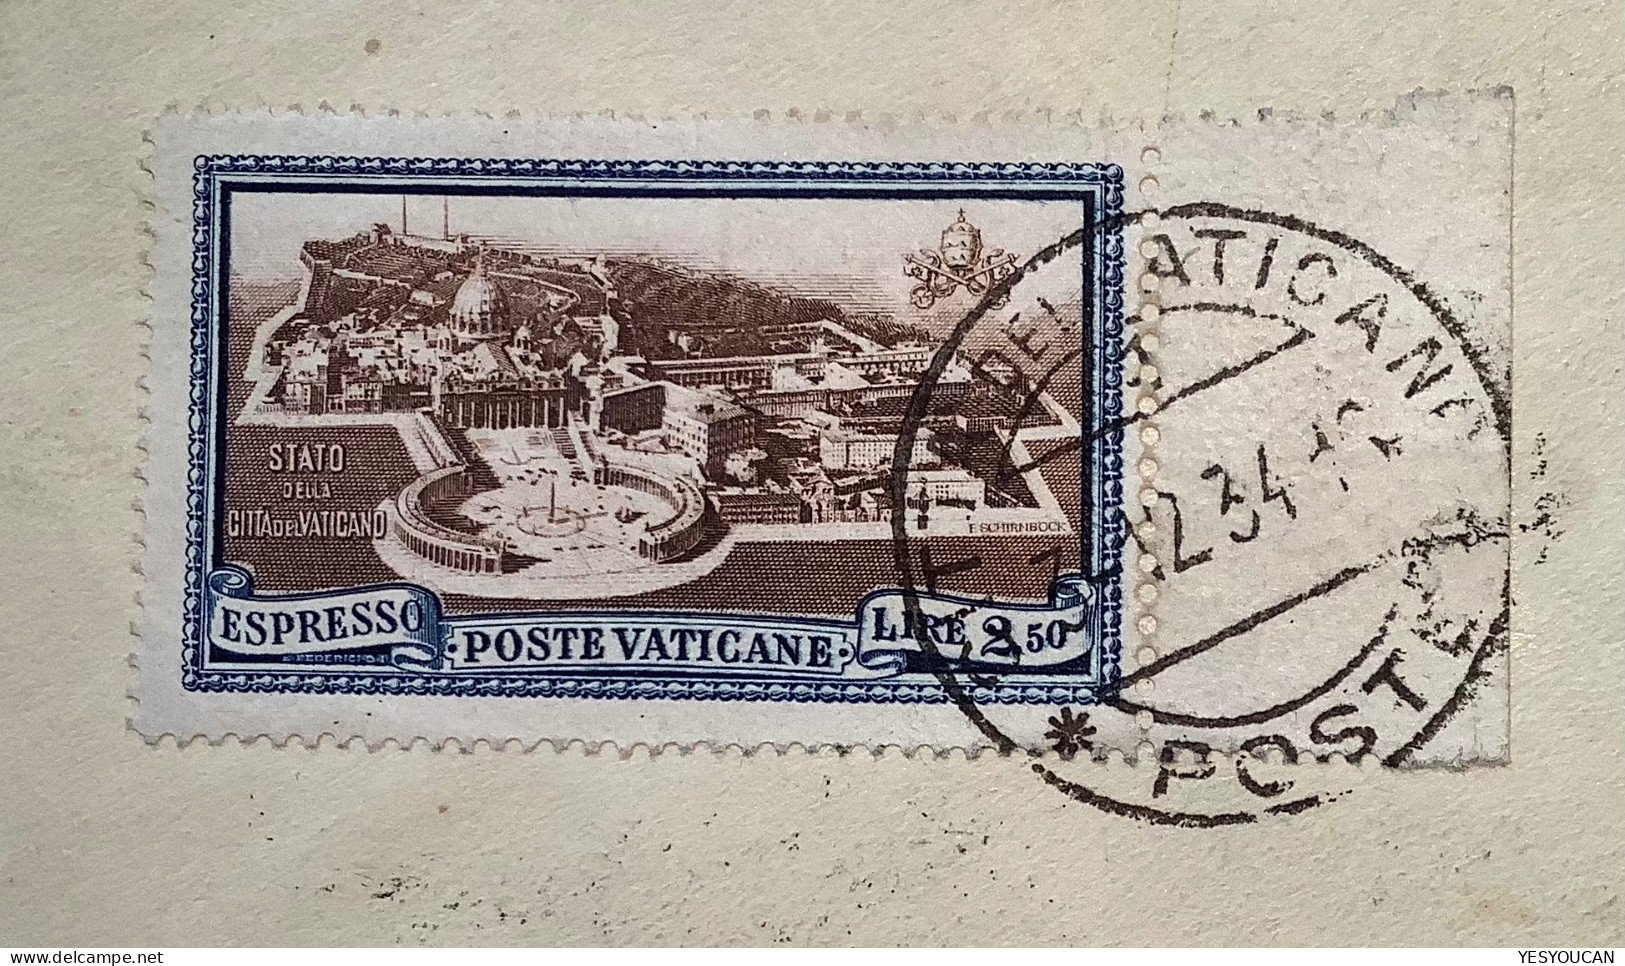 Sa.33, E4 1933 10L+Espresso2,50 1934lettera>Brno(Vatican Vaticano cover vignette label Jan Amos Komensky philosoph Presl